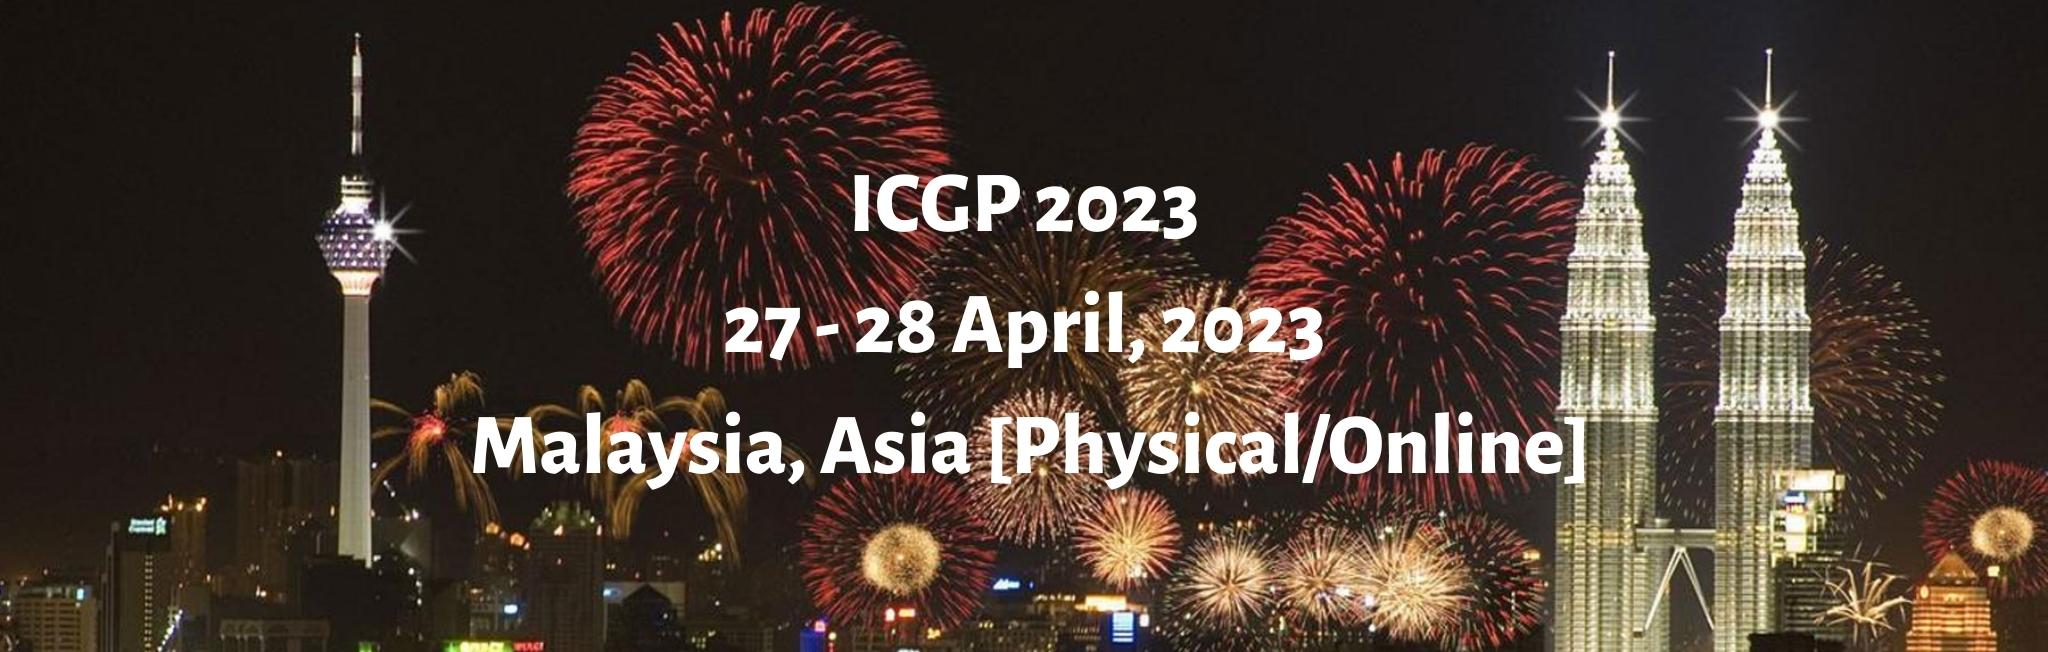 International Conference on Global Peace 2023, Kuala Lumpur, Malaysia